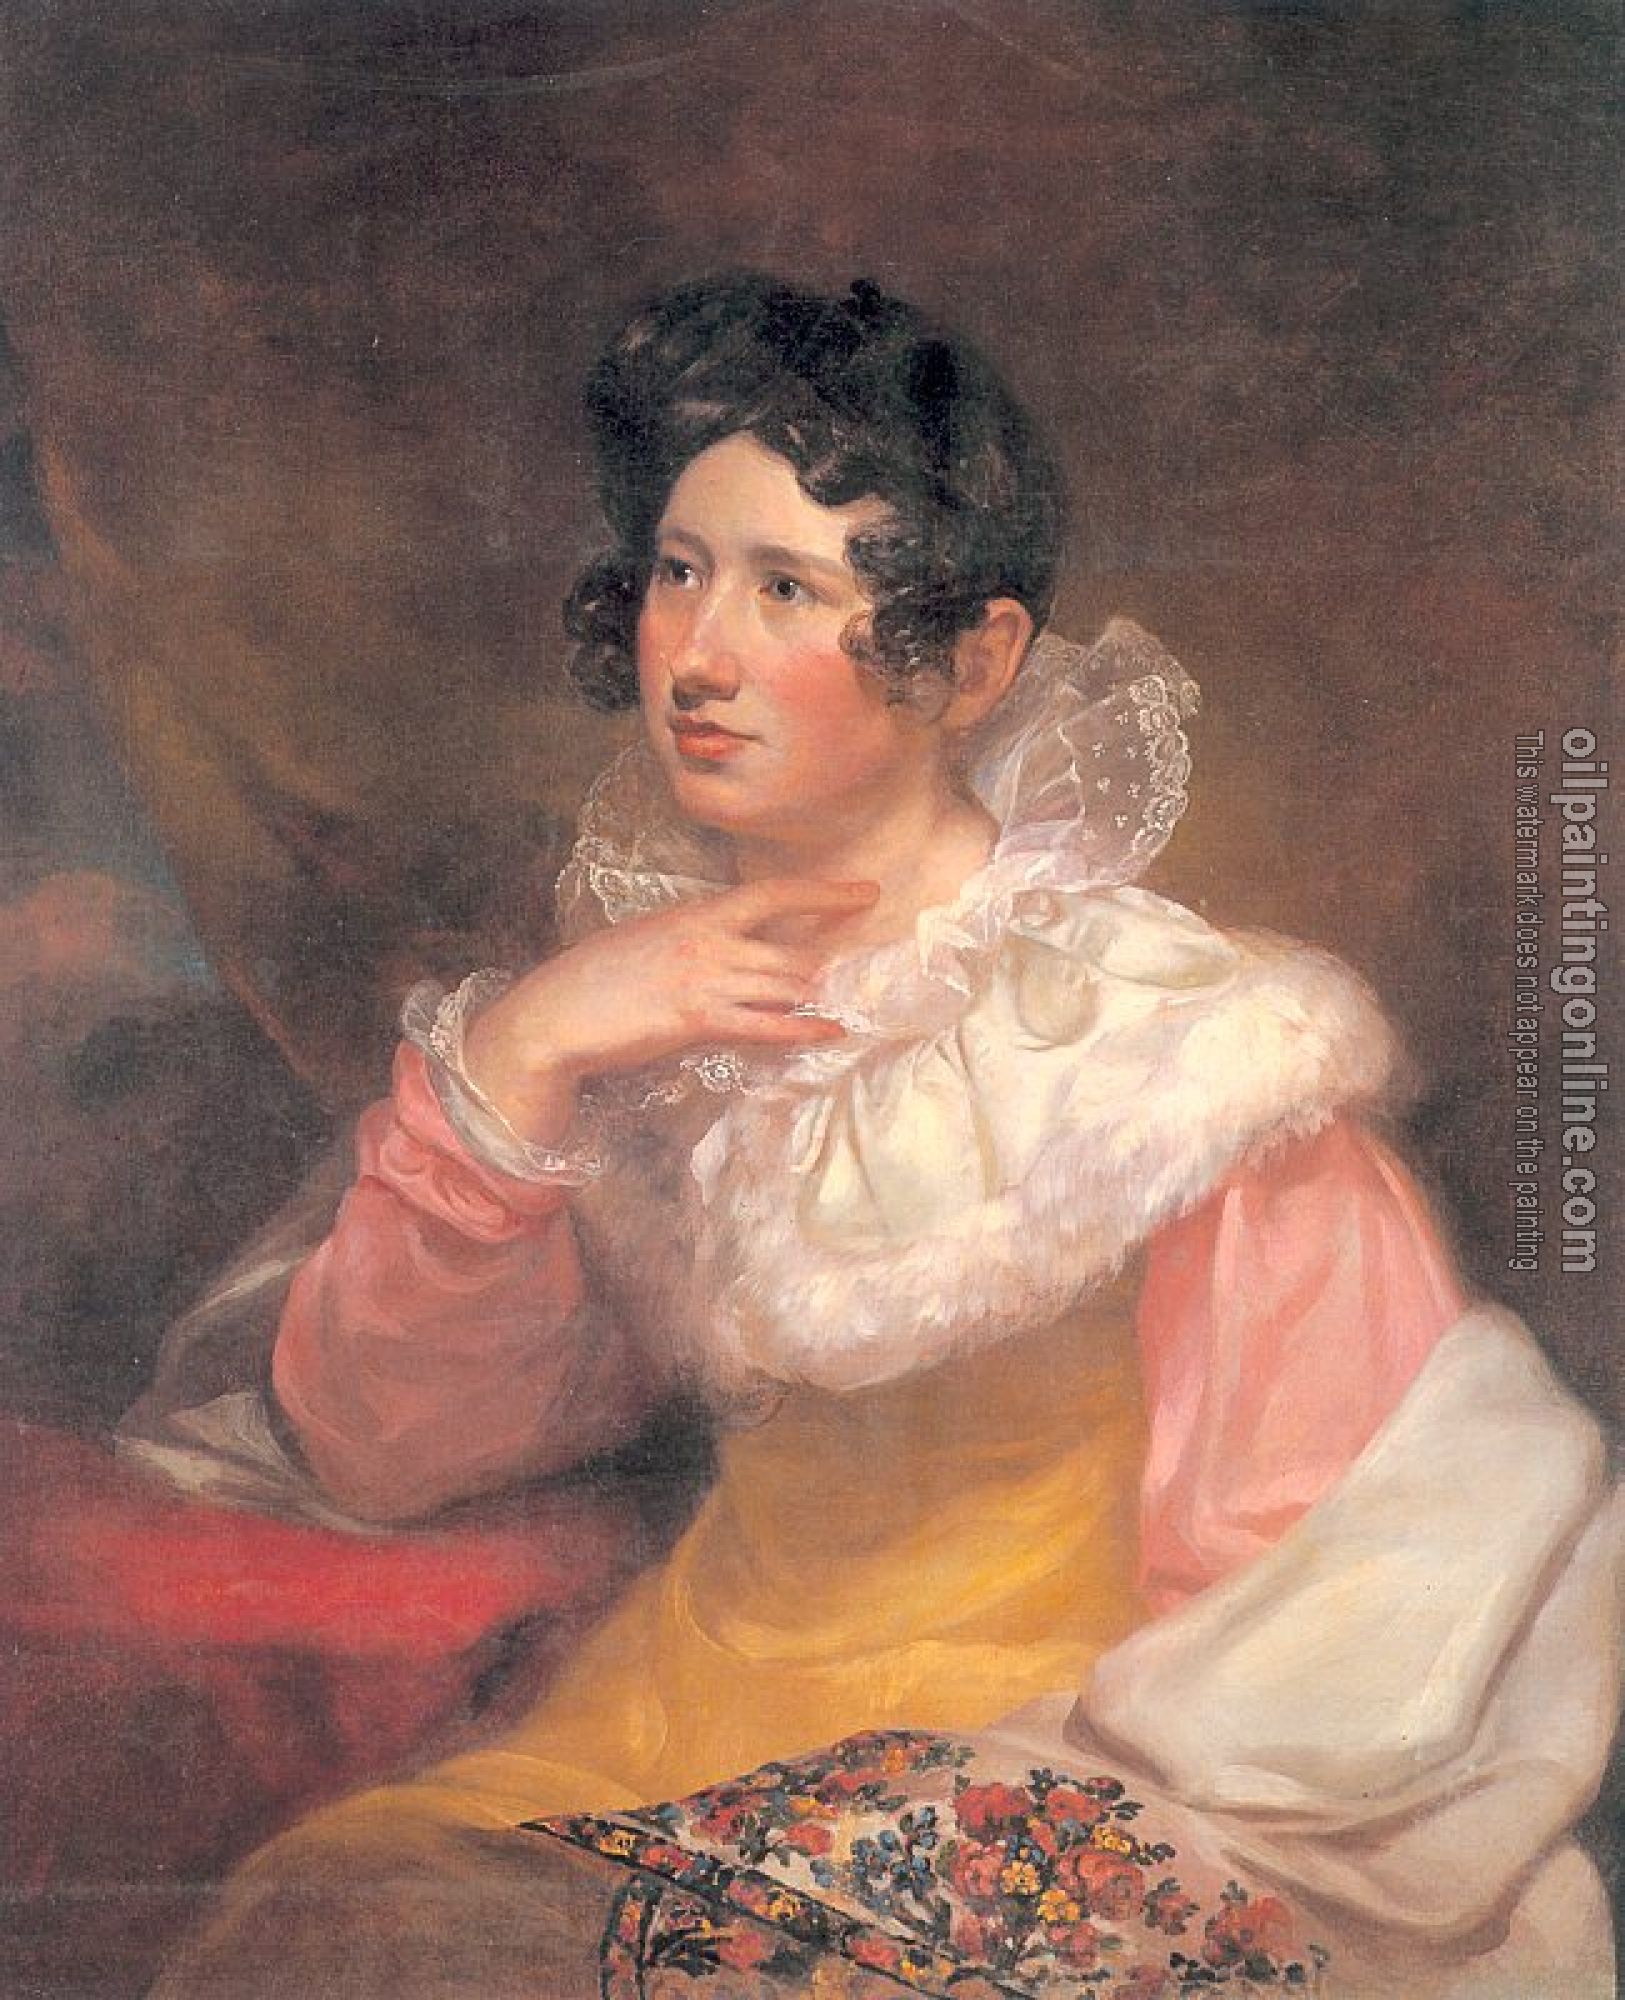 Morse, Samuel Finley Breese - Portrait of Lucretia Pickering Walker Morse